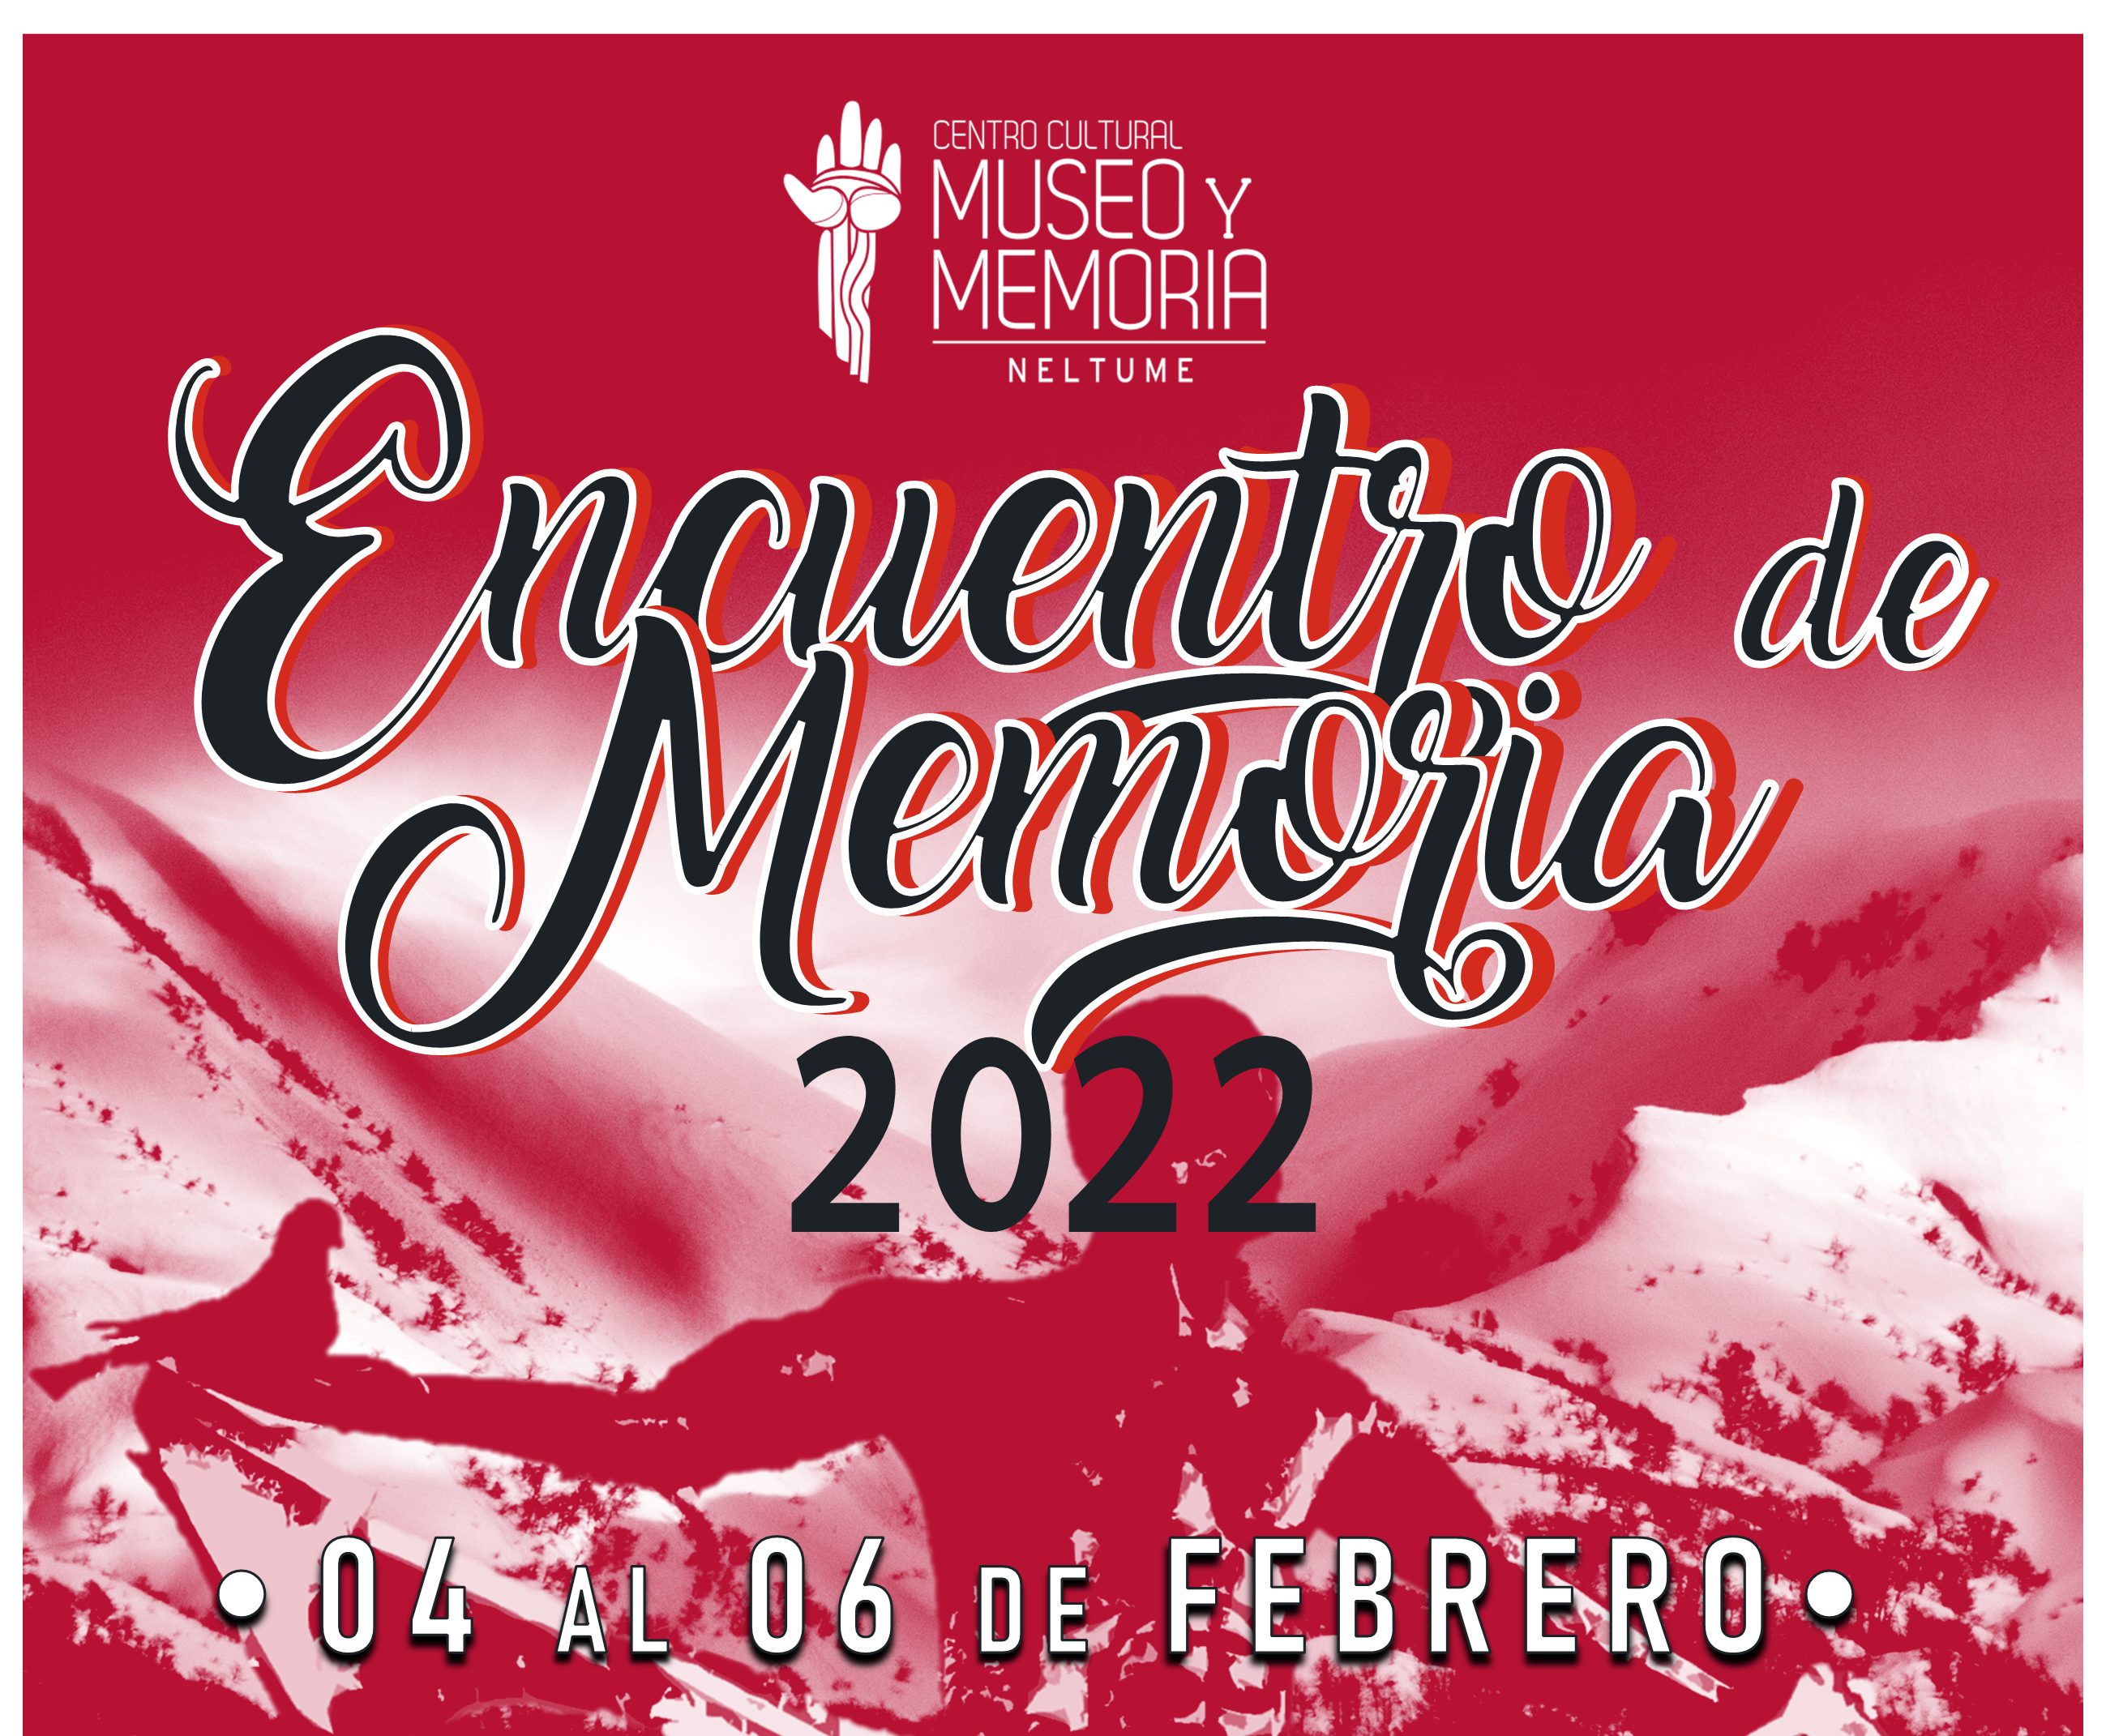 Centro Cultural Museo y Memoria de Neltume: Realizarán Encuentro de Memoria 2022 centrado en experiencias de lucha, organización y resistencia